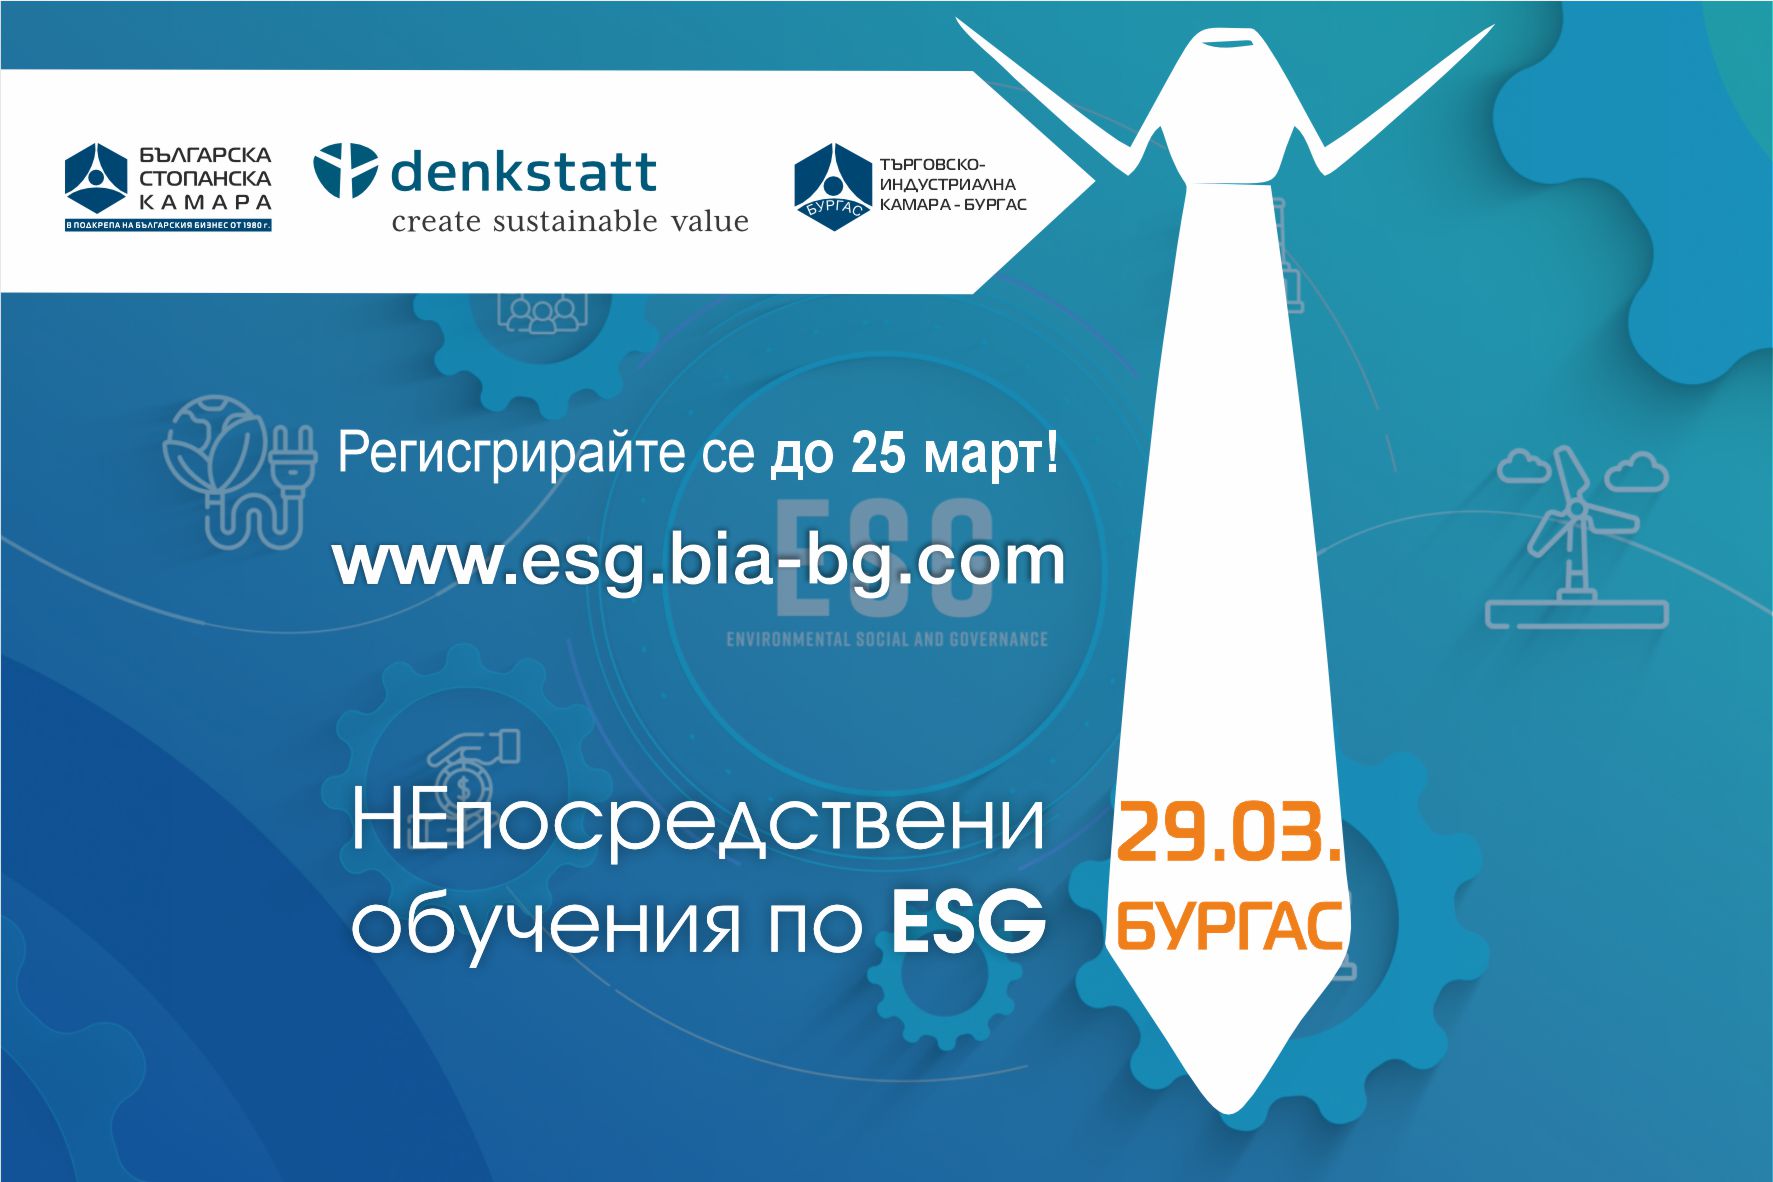 НЕпосредствени обучения по ESG в Бургас